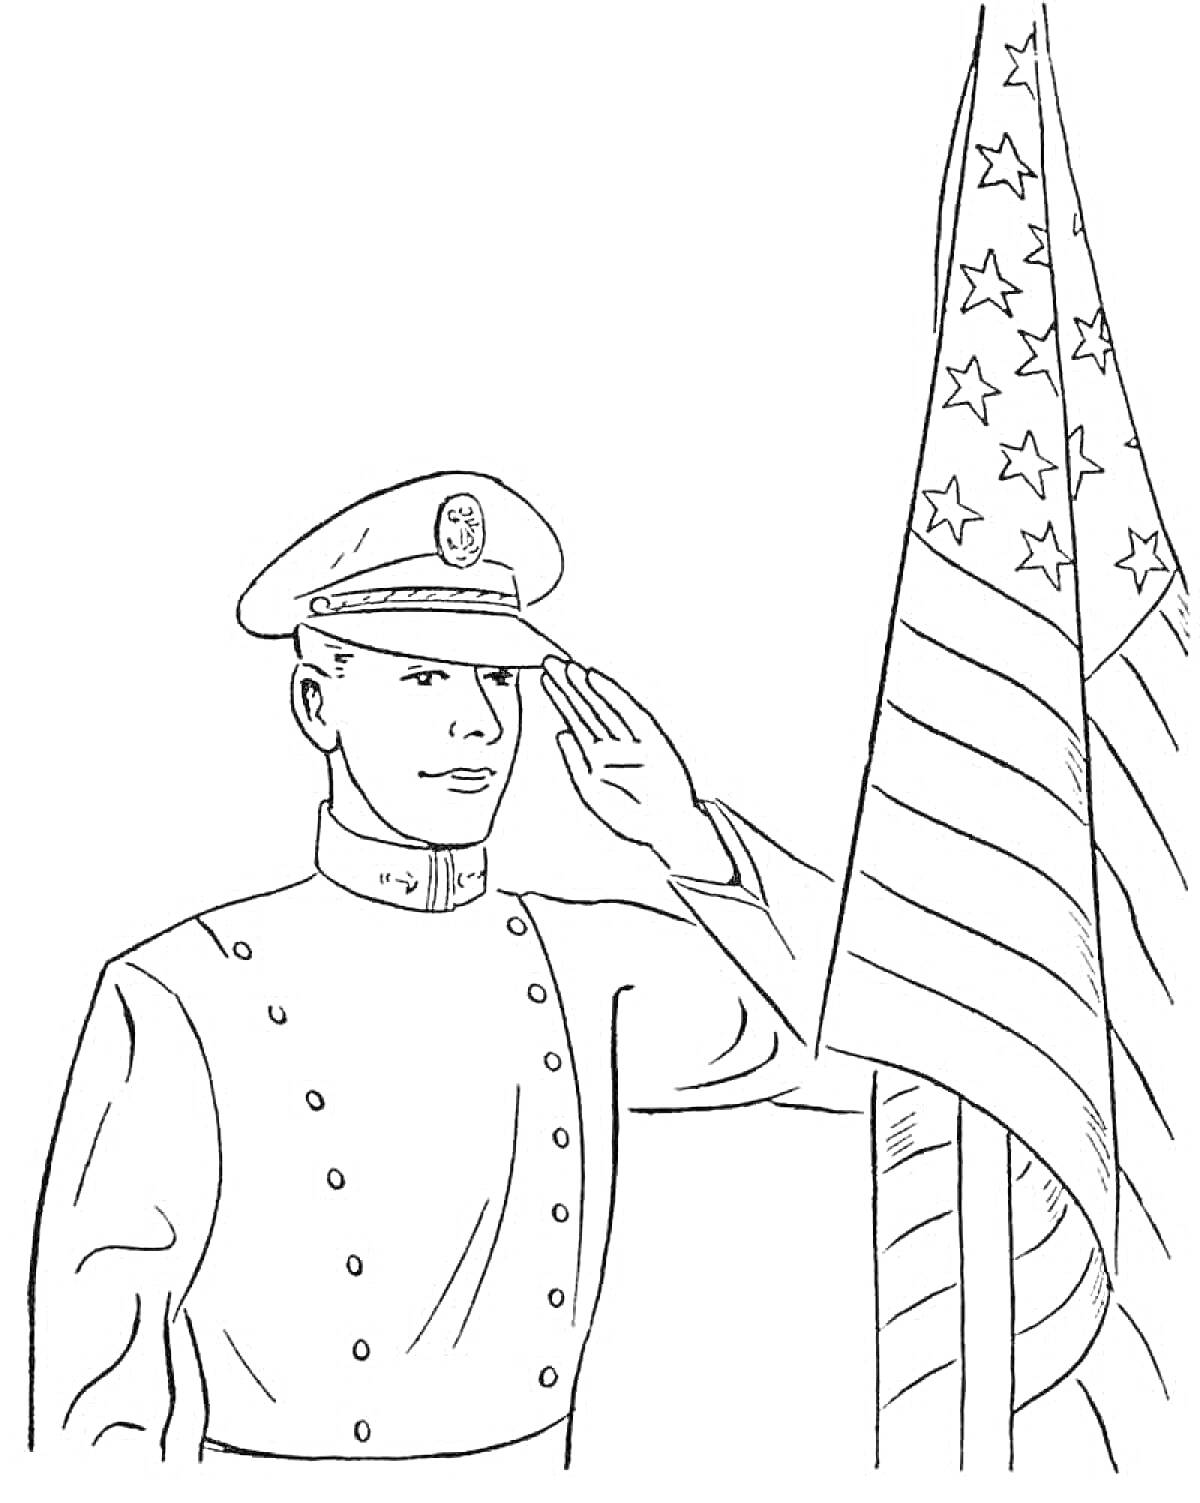 Солдат с фуражкой, отдающий честь, рядом с американским флагом